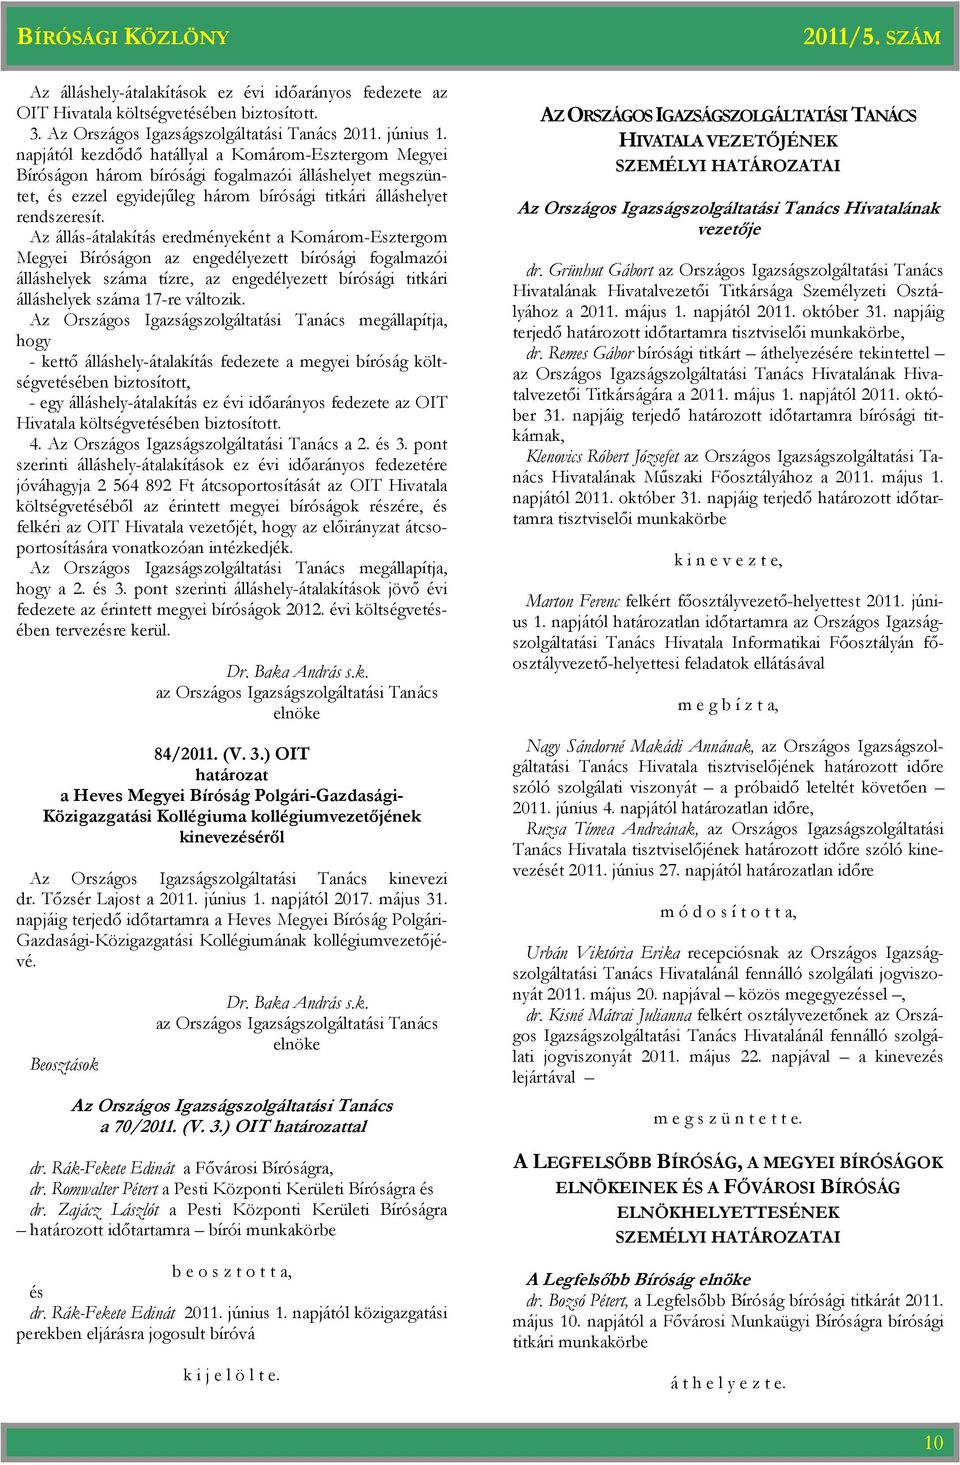 Az állás-átalakítás eredményeként a Komárom-Esztergom Megyei Bíróságon az engedélyezett bírósági fogalmazói álláshelyek száma tízre, az engedélyezett bírósági titkári álláshelyek száma 17-re változik.